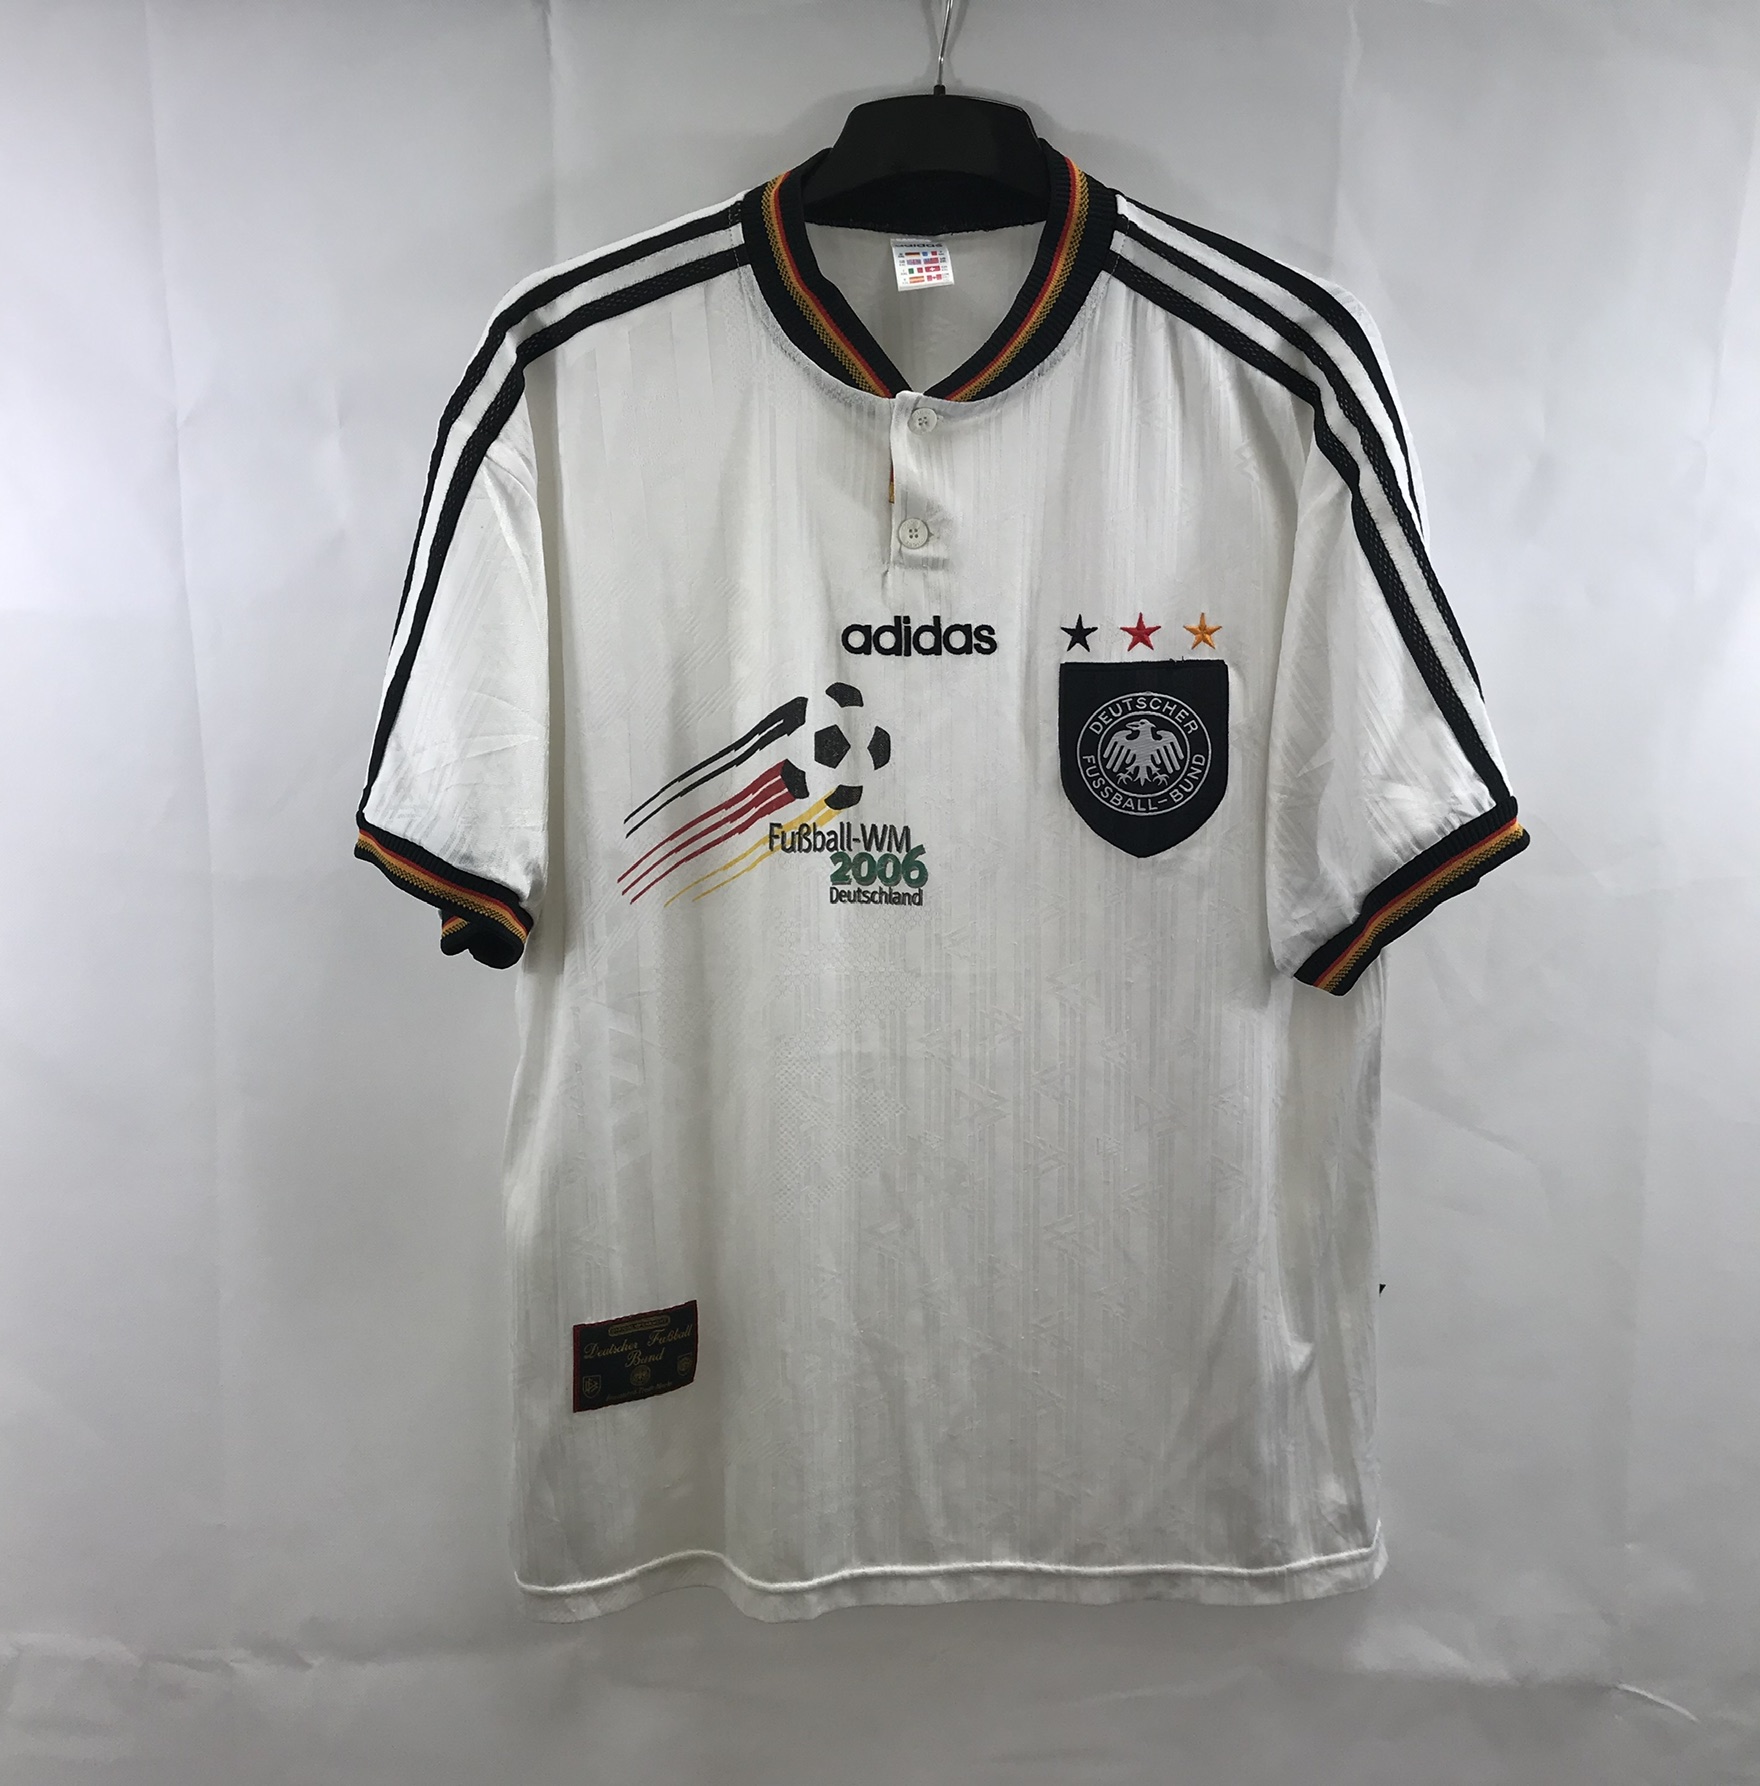 1996 germany jersey